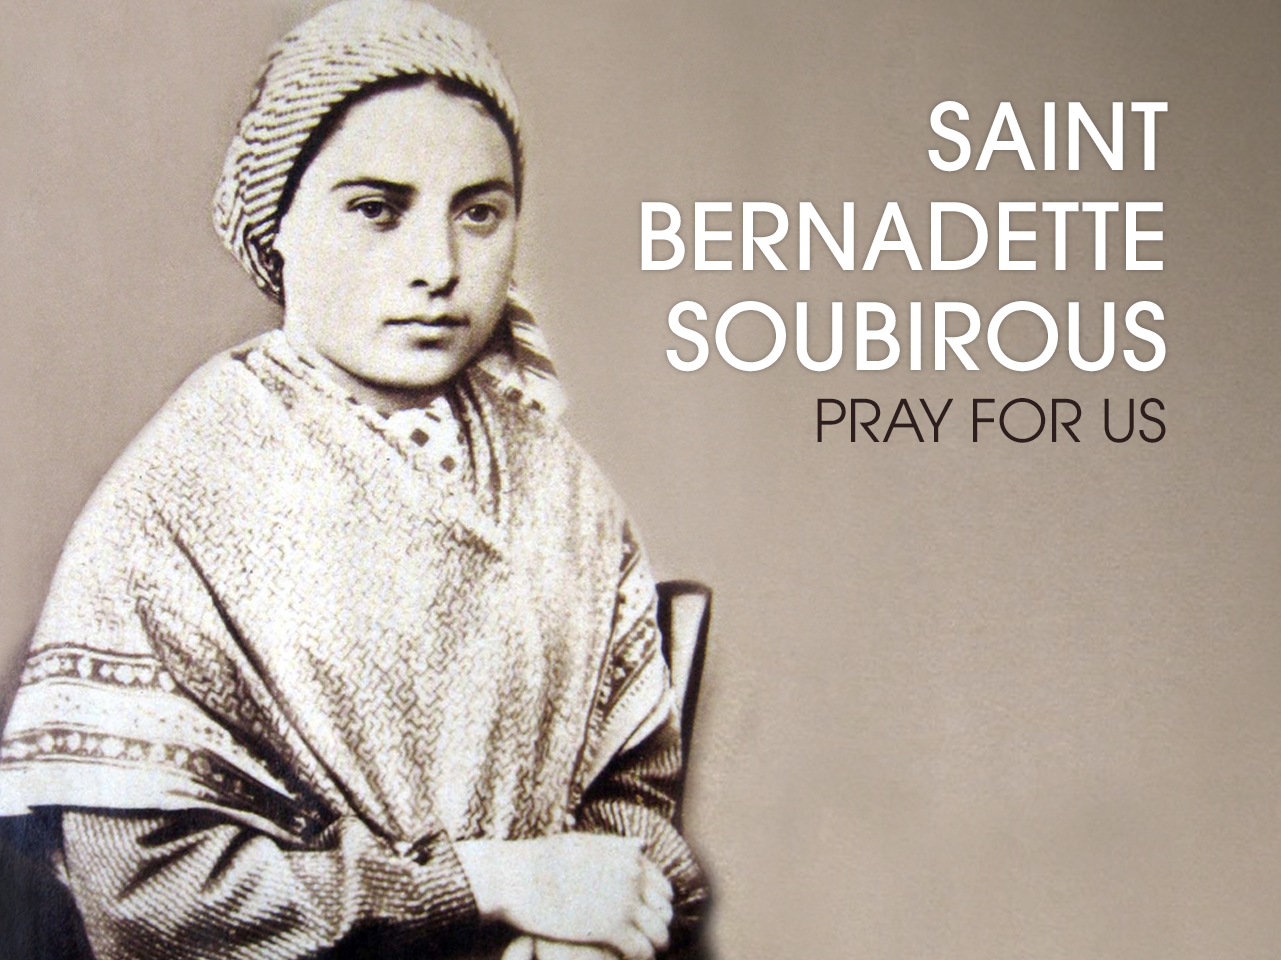 St. Bernadette Soubirous of Lourdes